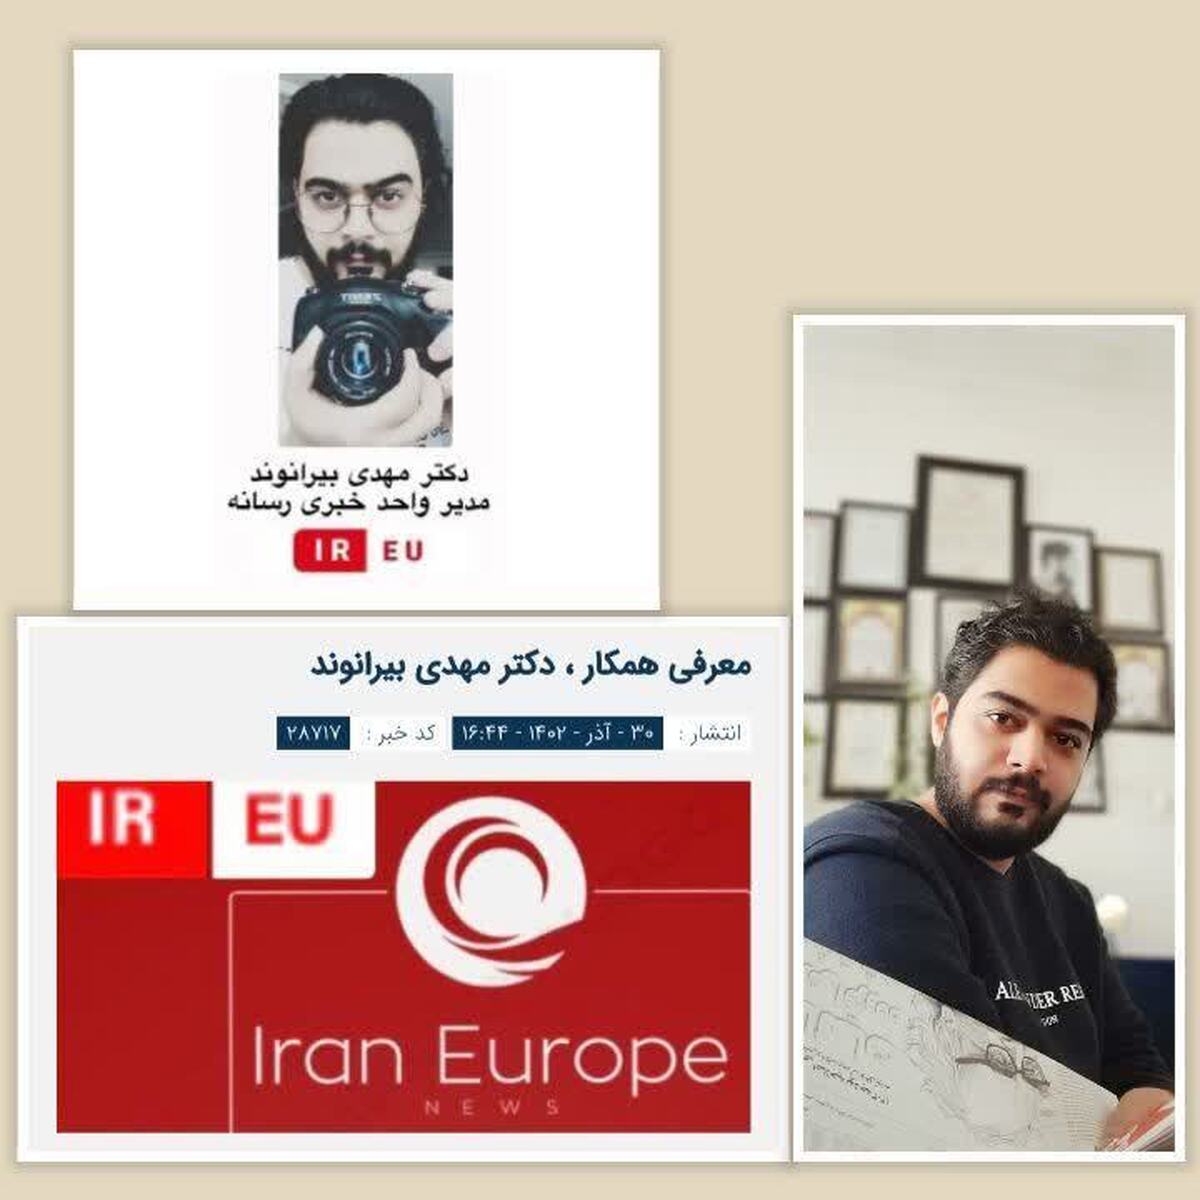 انتصاب یک لرستانی به عنوان مدیر خبری رسانه ایرانیان اروپا  در برلین  